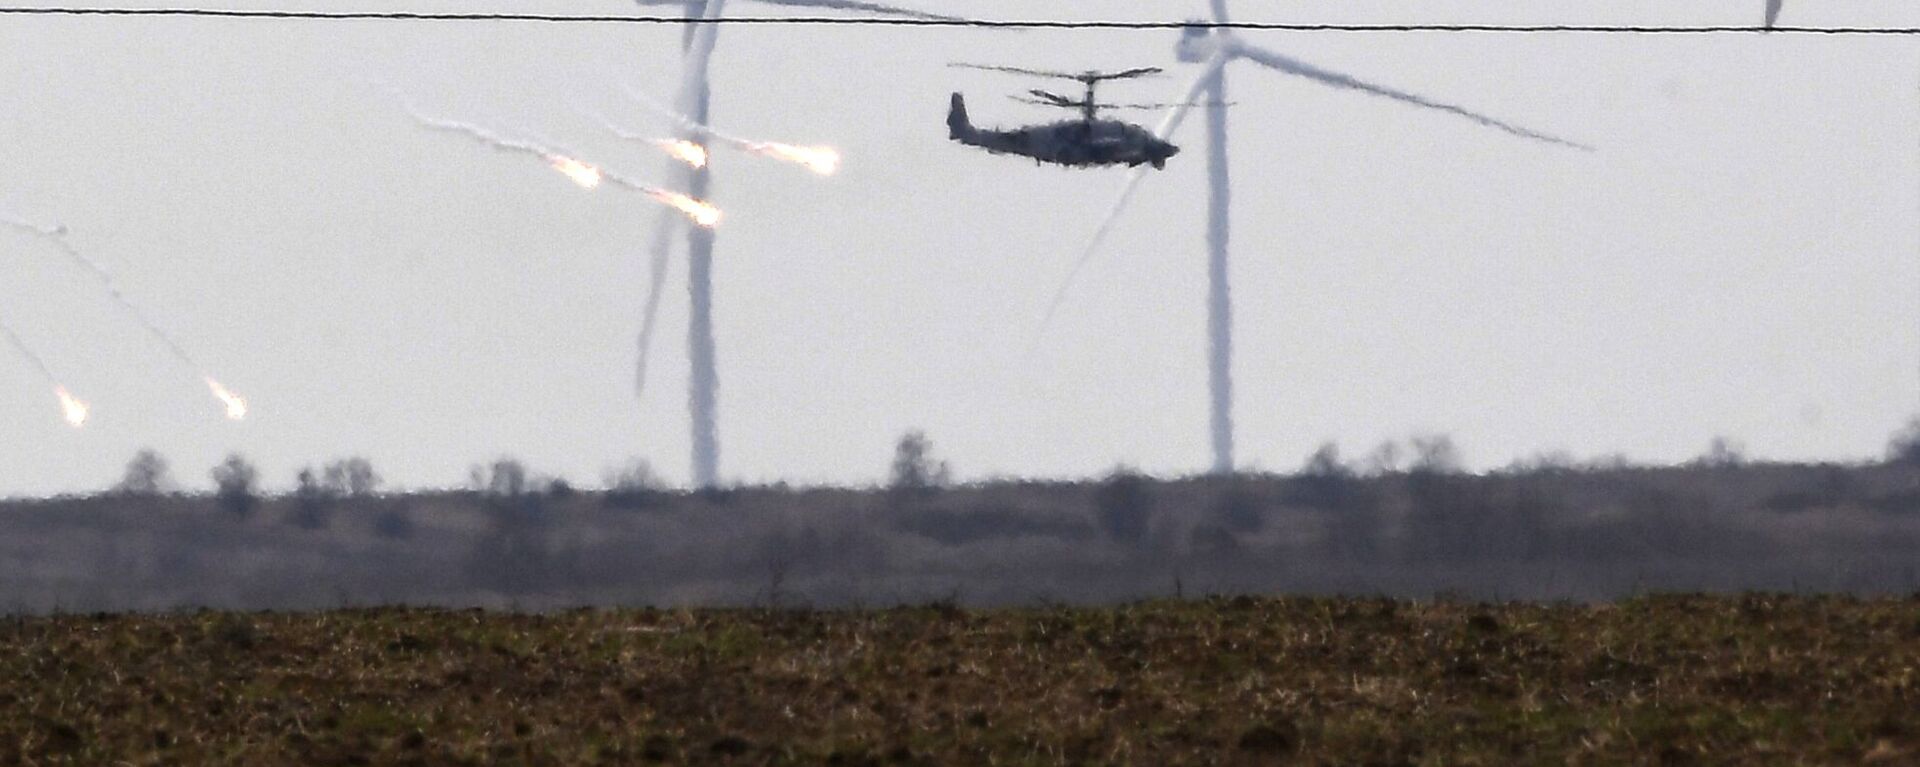 مروحيات هجومية من طراز مي-24 تابعة للقوات الجوية الروسية تحلق في سماء أرمينيا 28 فبراير 2022 - سبوتنيك عربي, 1920, 14.09.2022